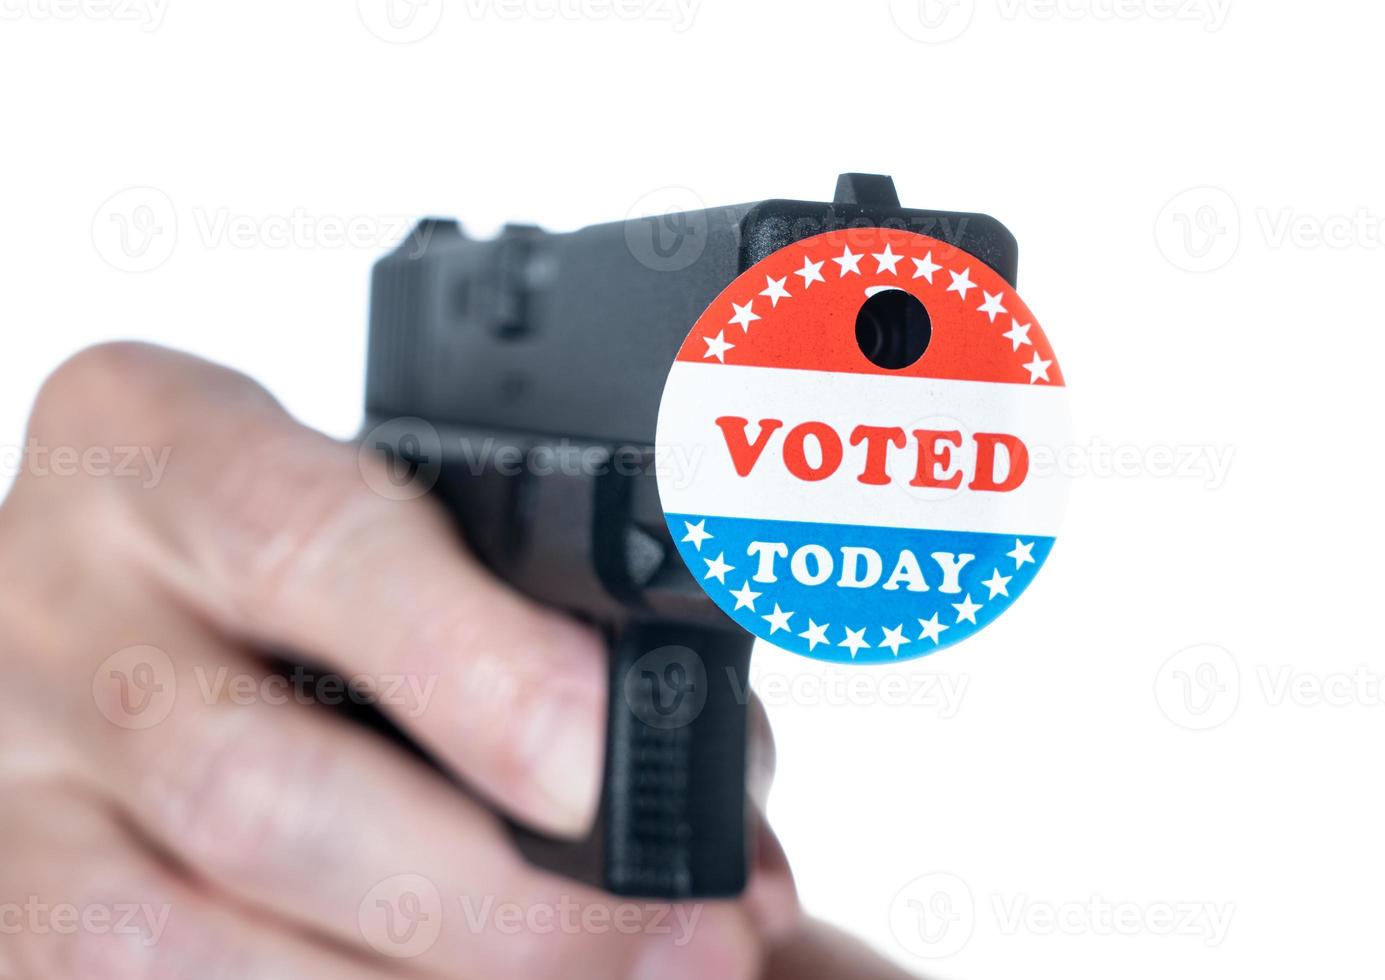 j'ai voté aujourd'hui bouton de campagne avec trou sur l'arme de poing pour la suppression des électeurs photo